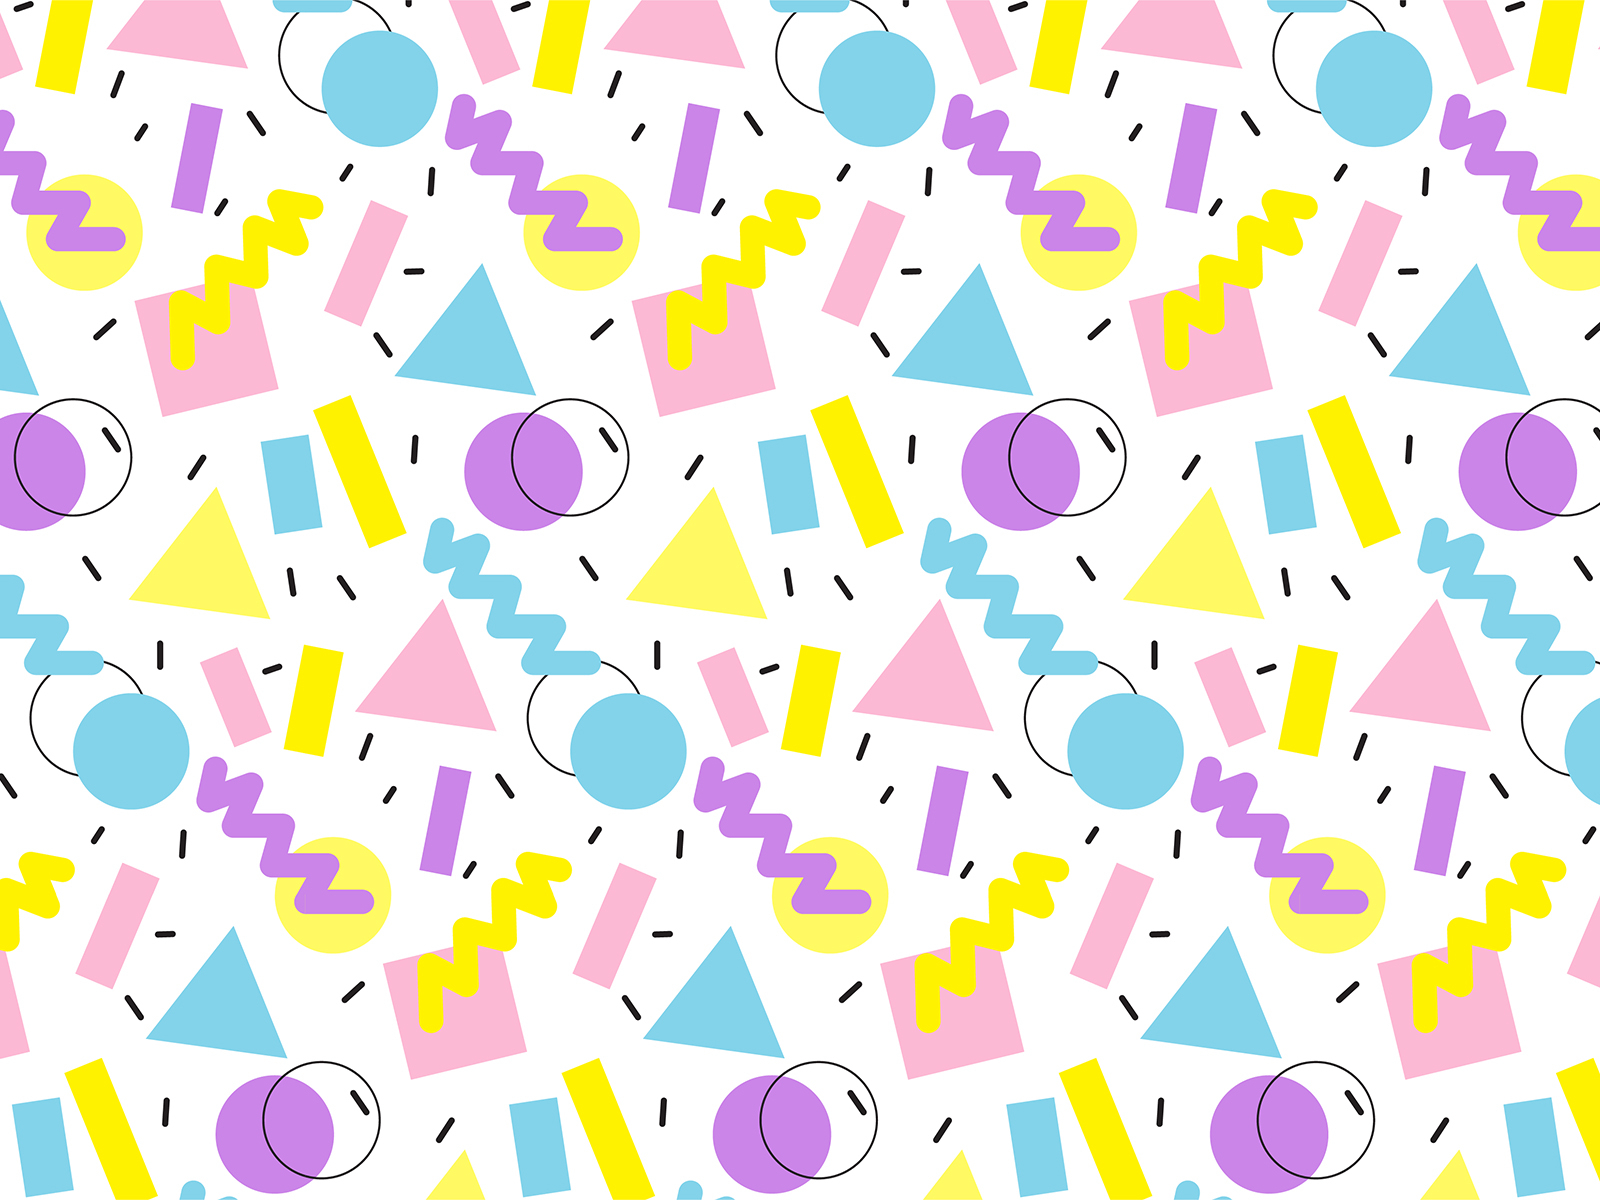 pattern by Anna Drozdetska on Dribbble